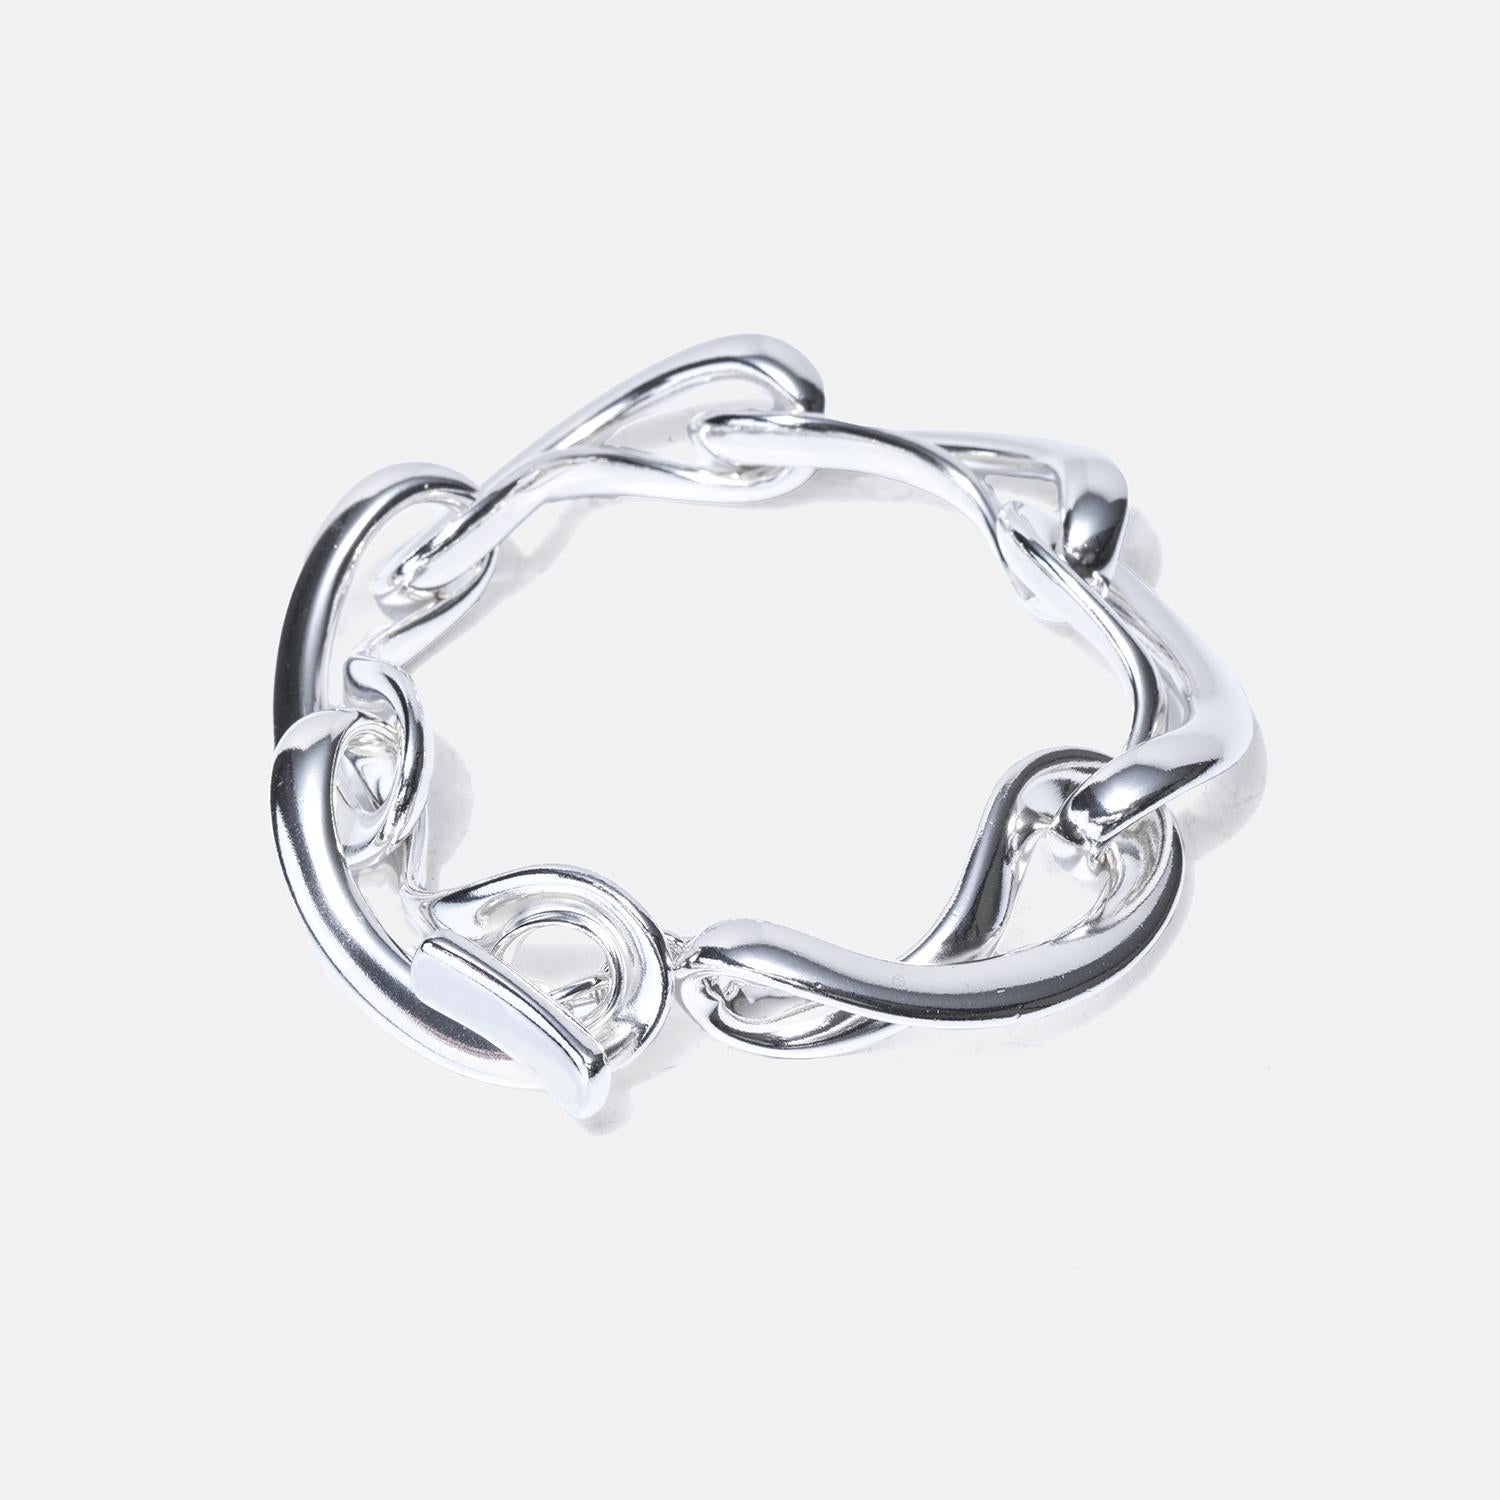 Esta pulsera de plata de ley, que forma parte de la colección Infinity, presenta eslabones de forma orgánica que se entrelazan con fluidez, creando un aspecto dinámico y elegante. Cada eslabón tiene una forma y un tamaño uniformes, lo que contribuye